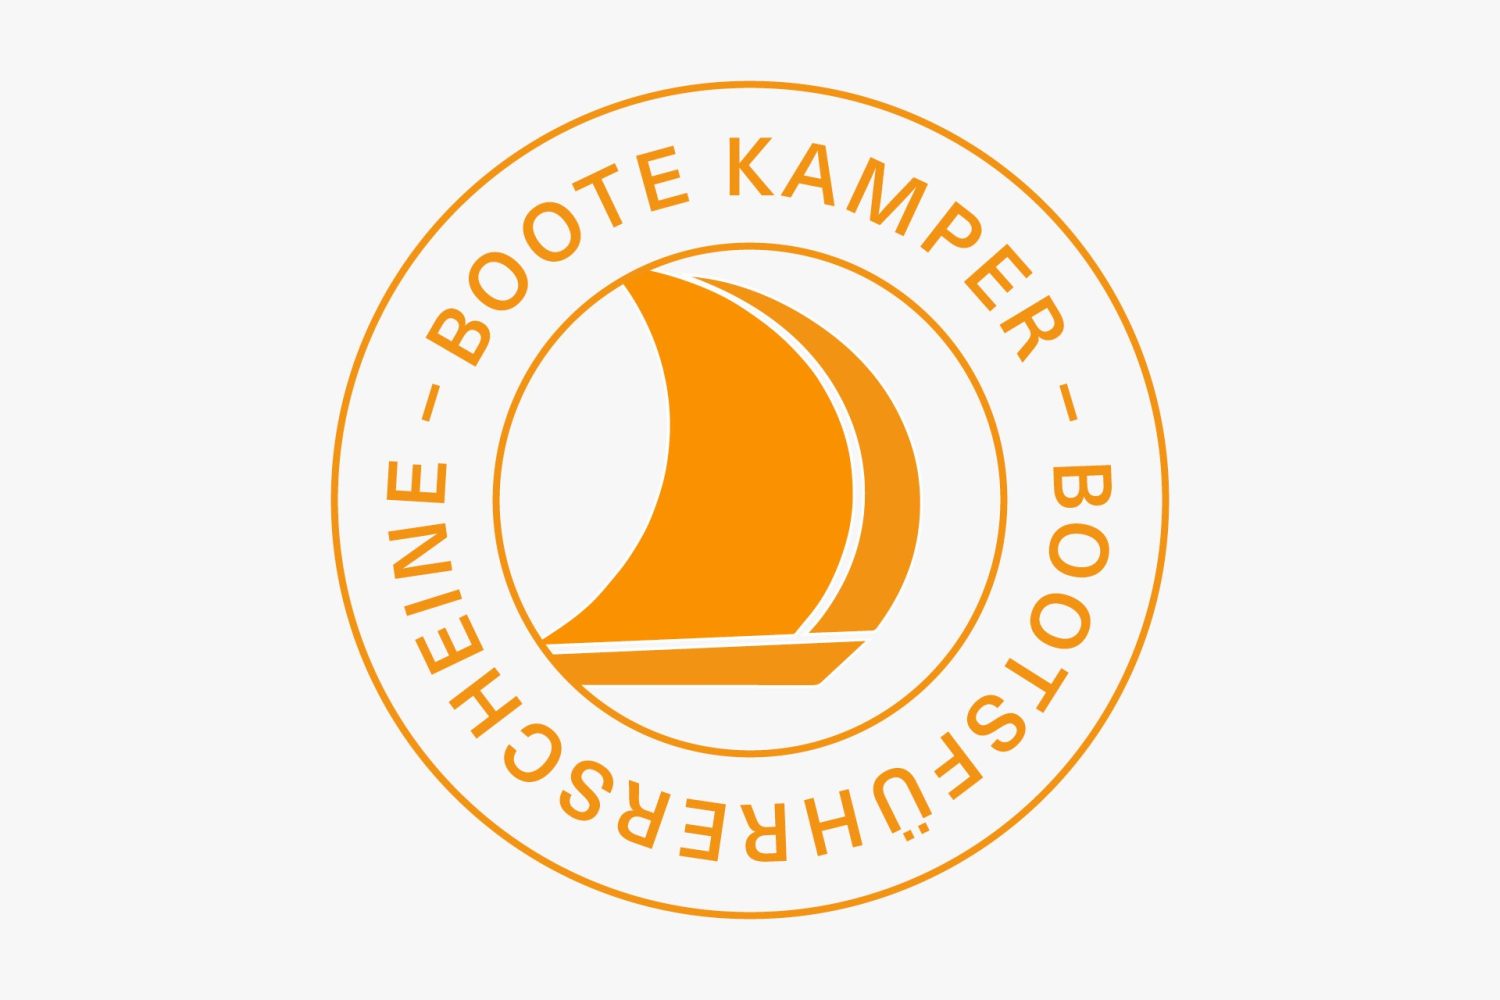 Boote Kamper transparent png logo.